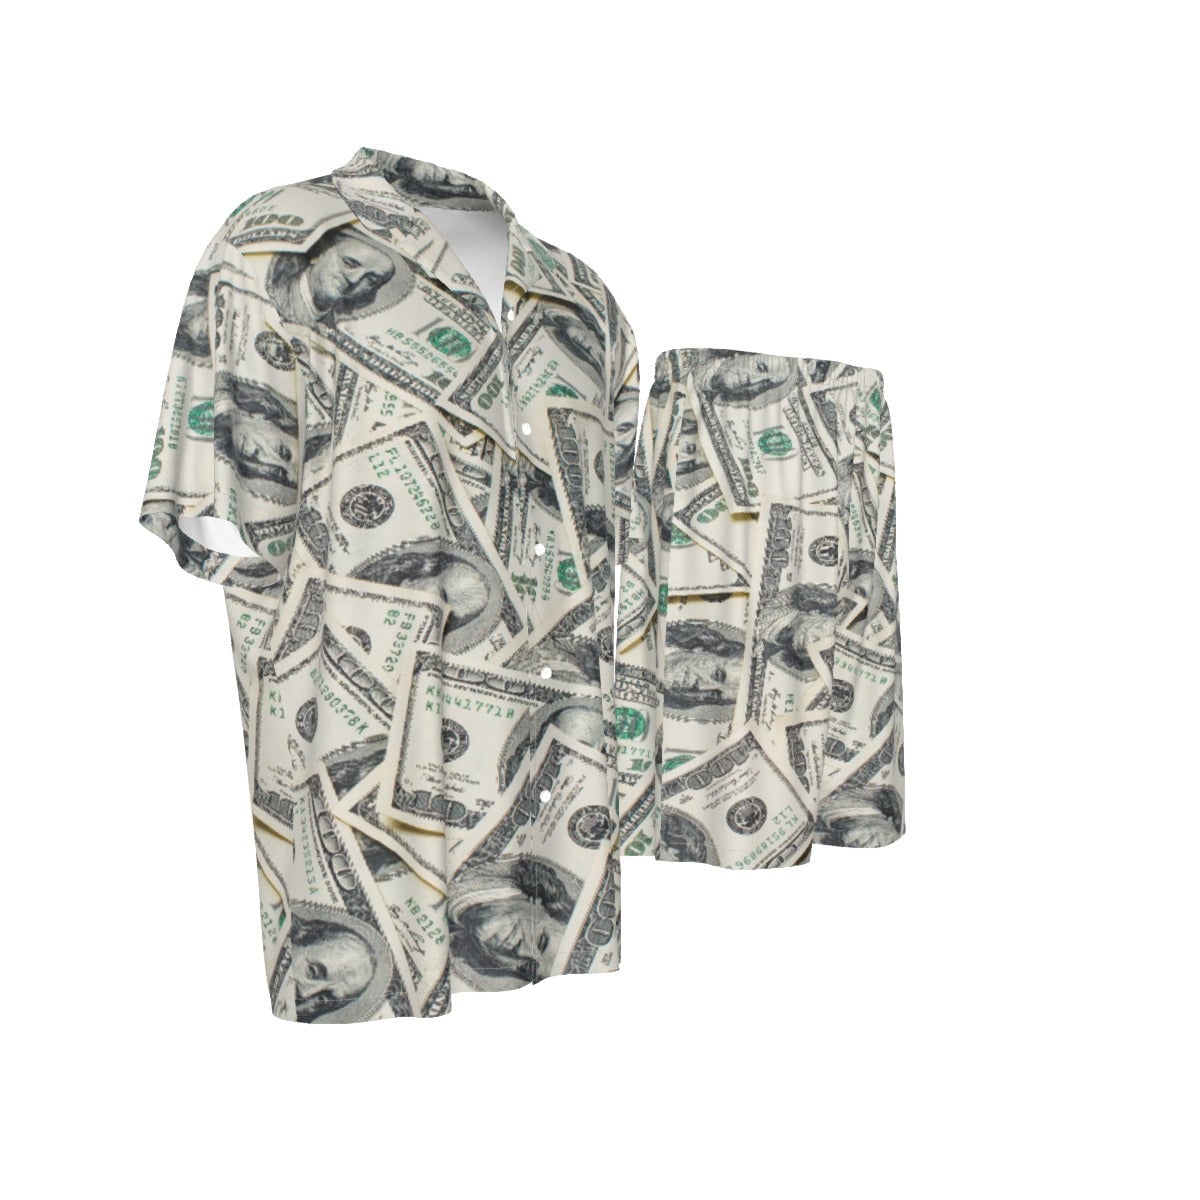 Cash Money Dollar Bill Gangster Silk Shirt Suit Set